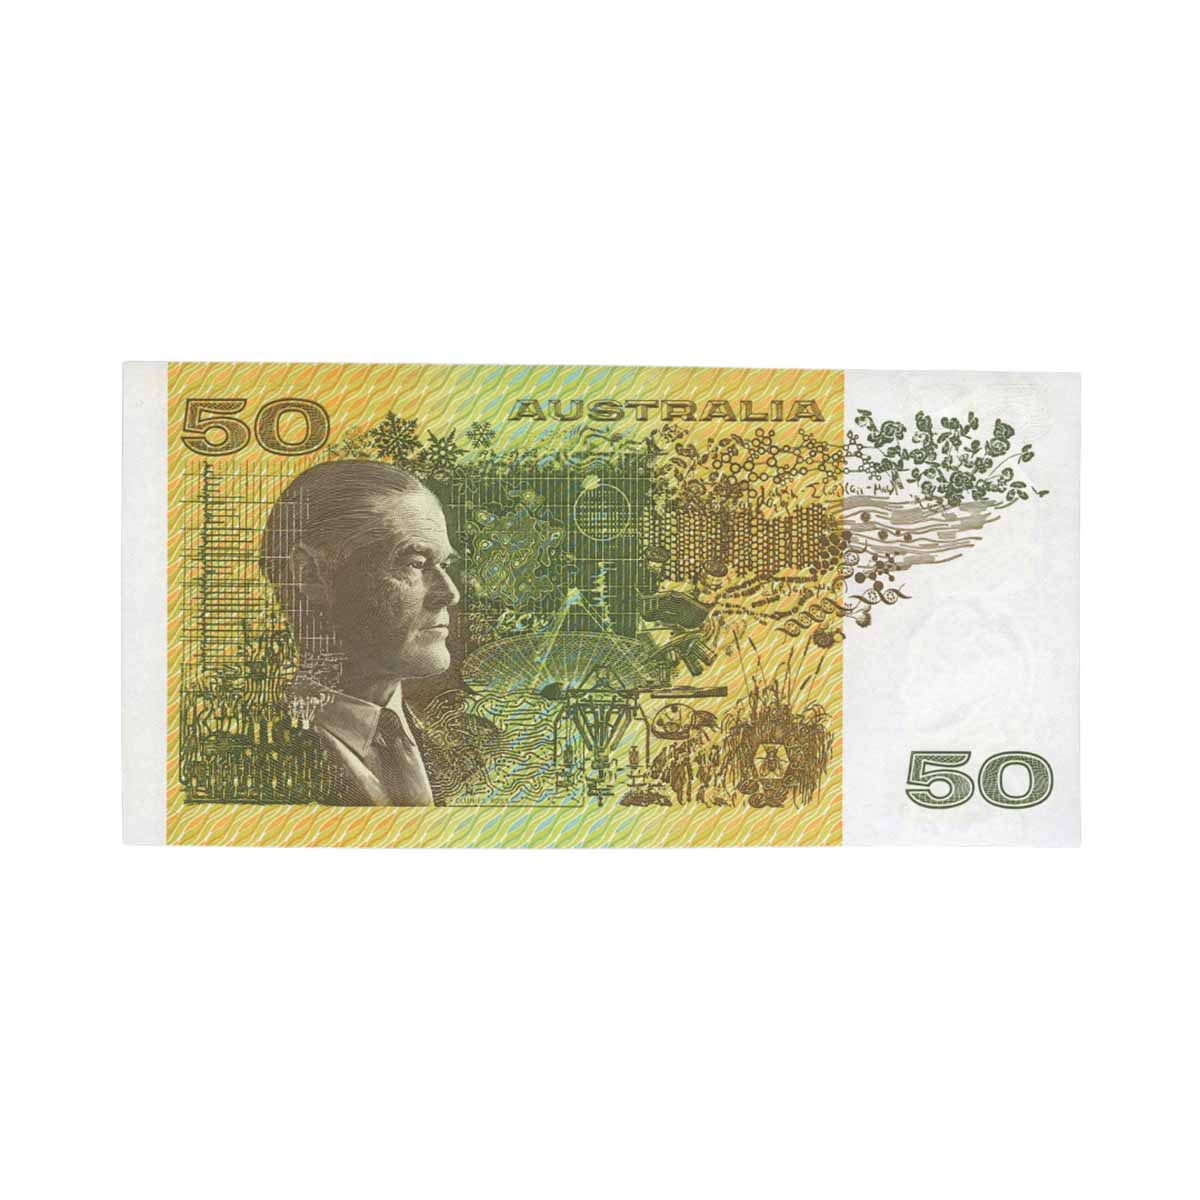 1993 $50 R515 Fraser/Evans Uncirculated